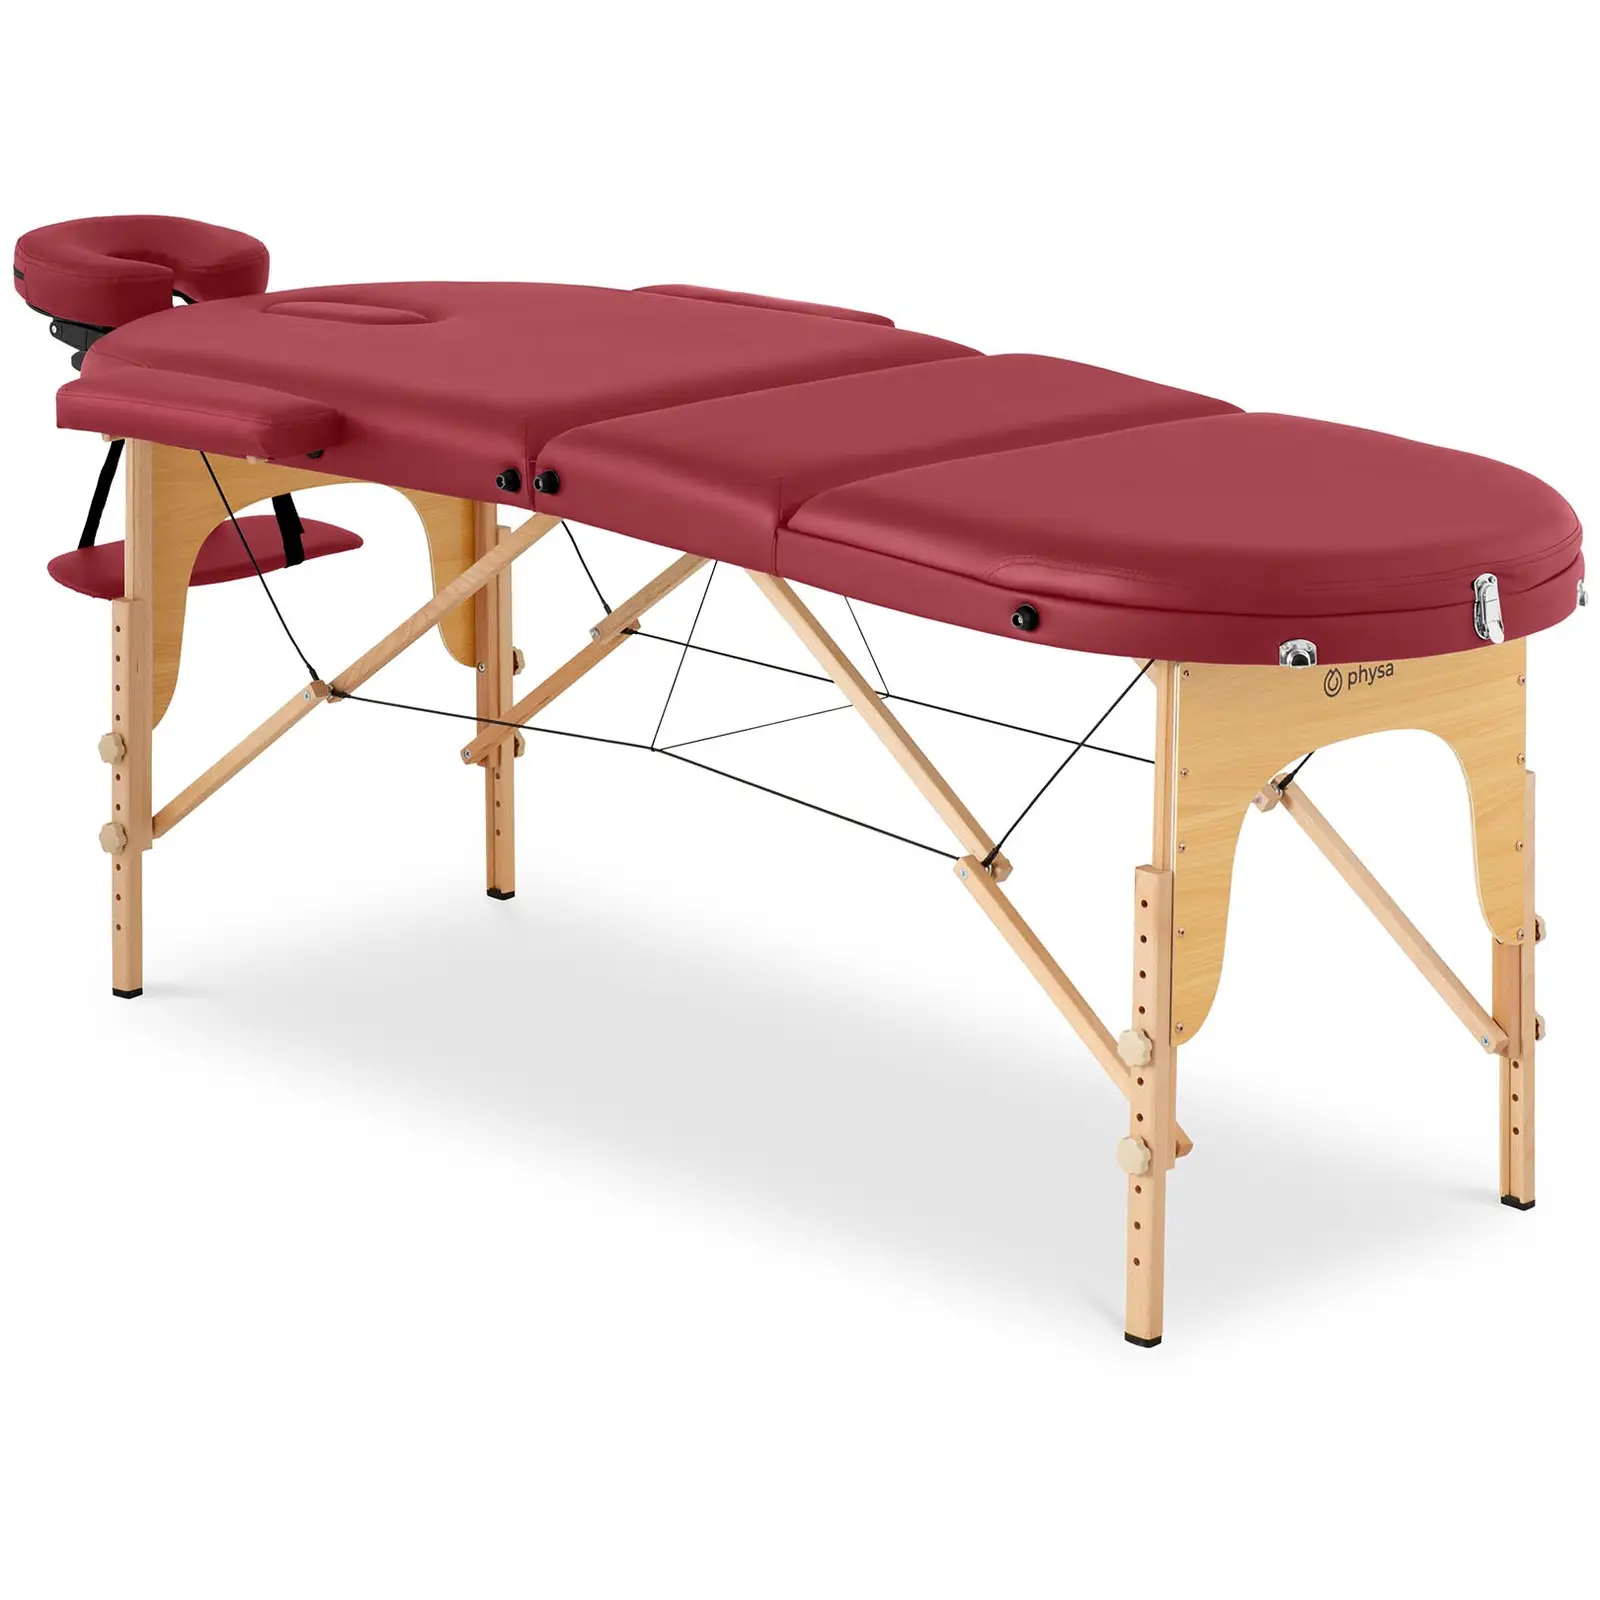 Camilla de masaje plegable - 185-211 x 70-88 x 63-85  cm - 227 kg - Rojo